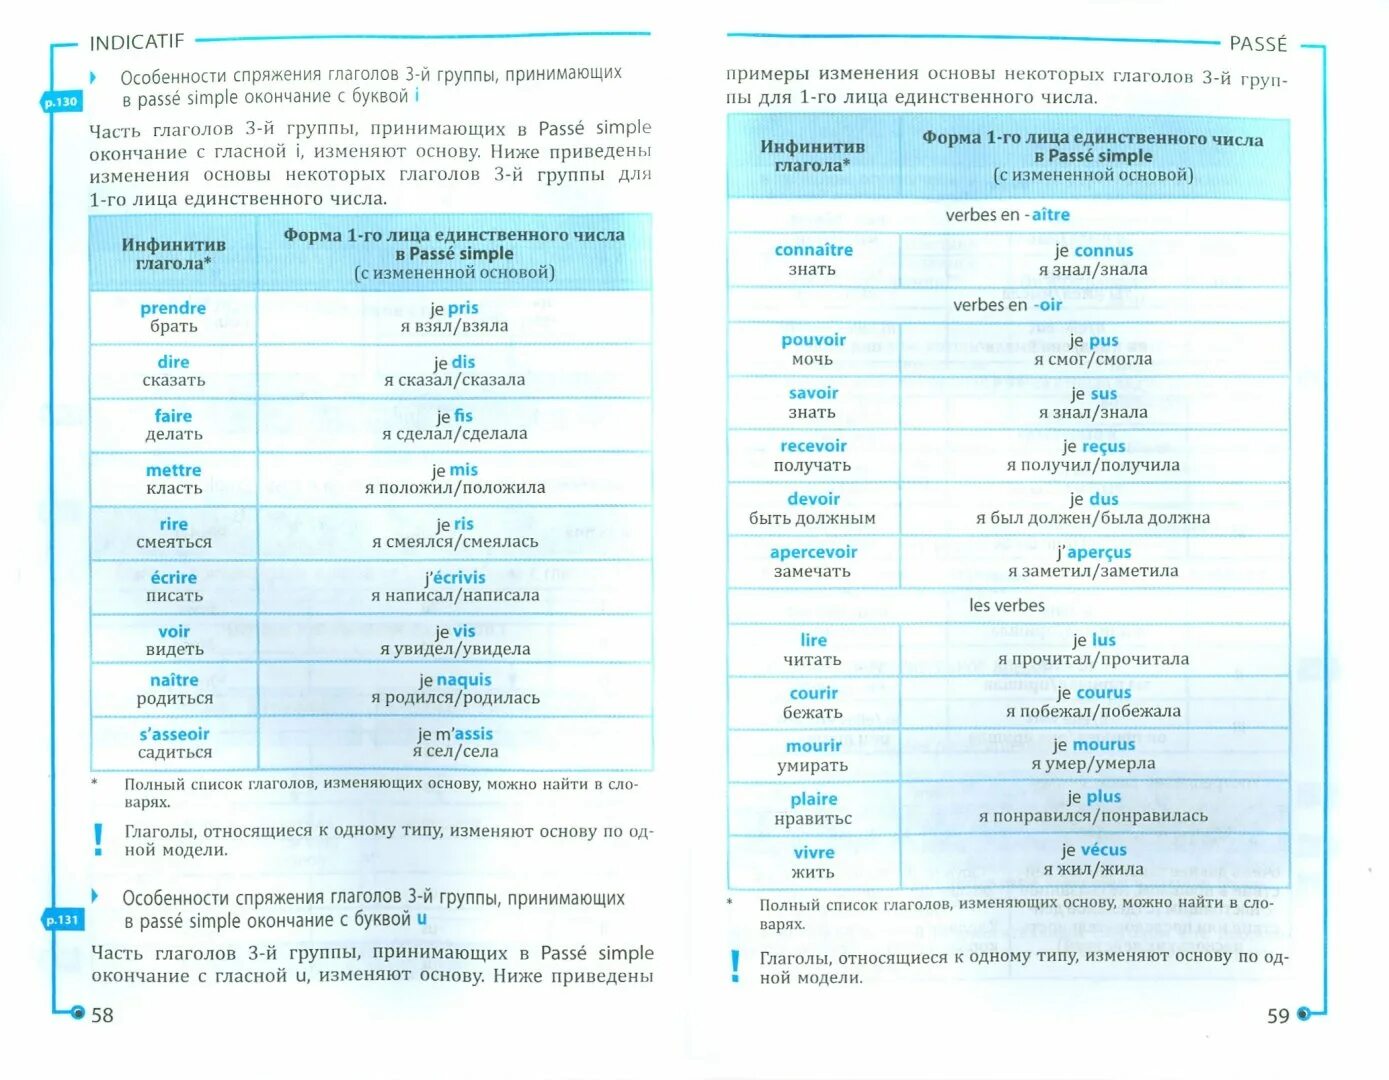 Глаголы полный список. Все о французском глаголе Догадина. Всё о французском глаголе. Догадина.